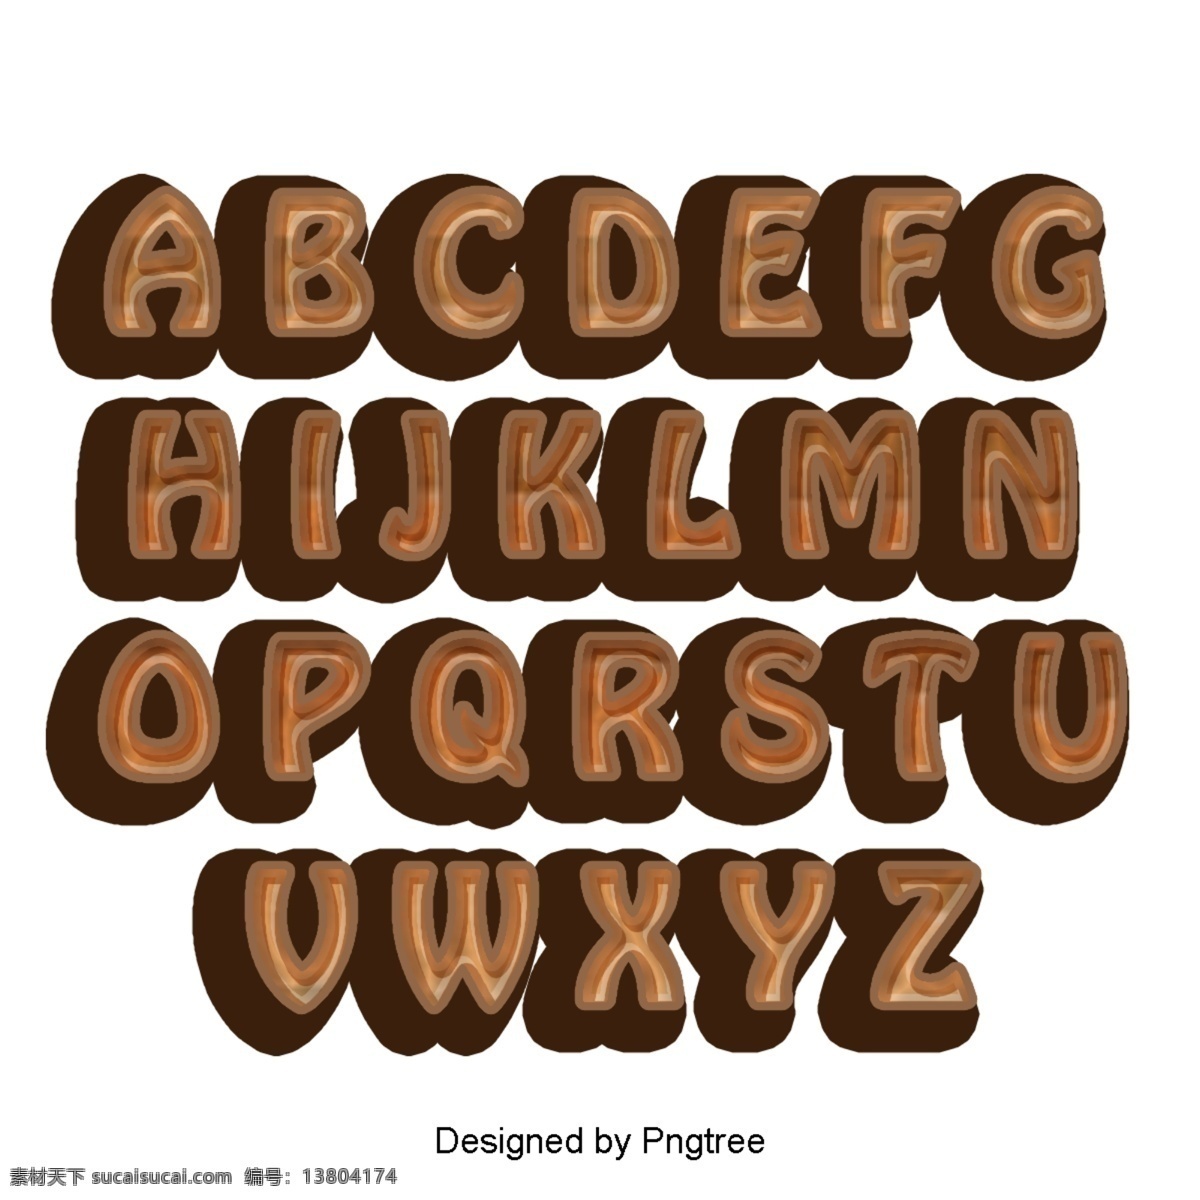 二 十 四 英文 字母 设置 字体 书法 海报 渐变 霓虹 3d 可爱 效果 巧克力 灰色 三维